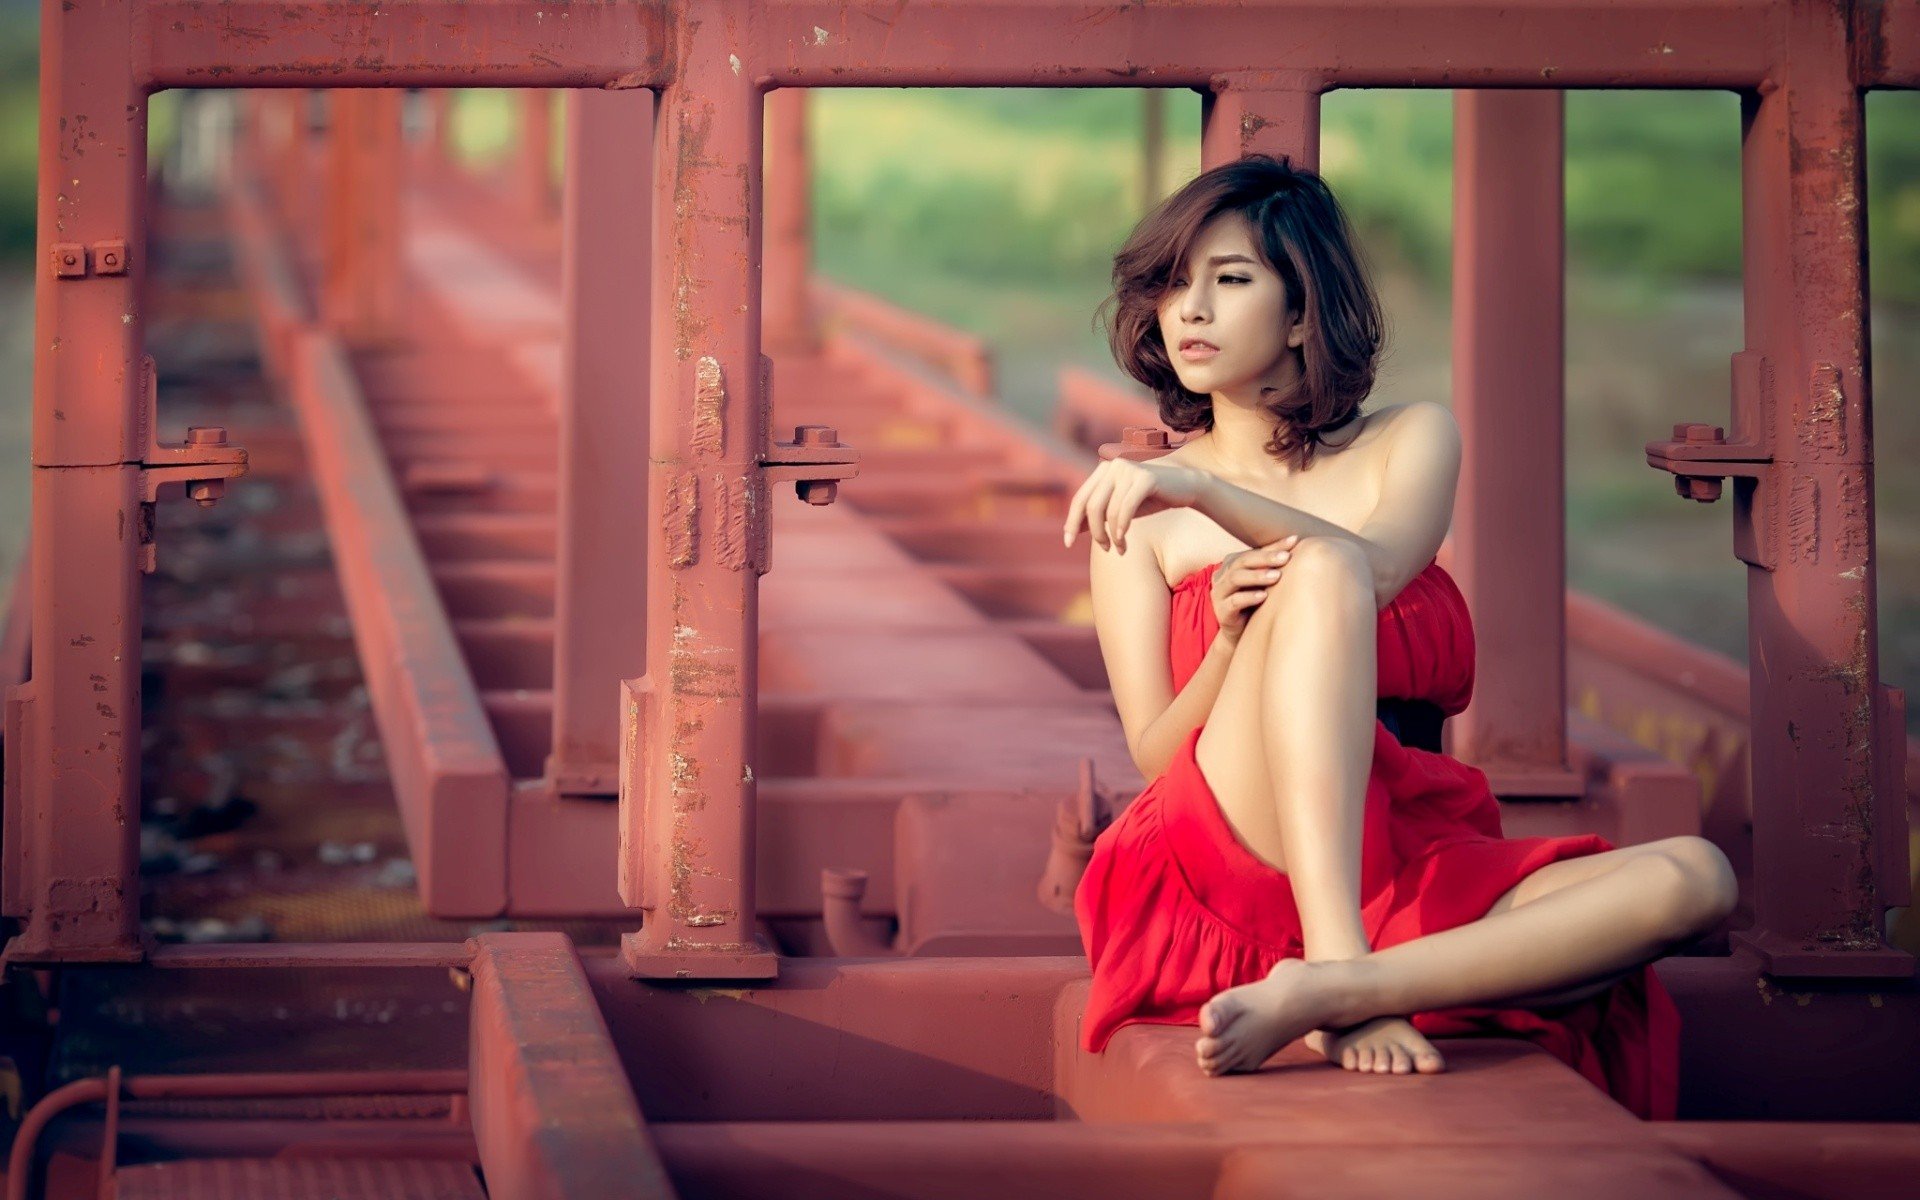 Asian, Brunette, Women outdoors, Sitting, Legs, Dress, Red dress Wallpaper